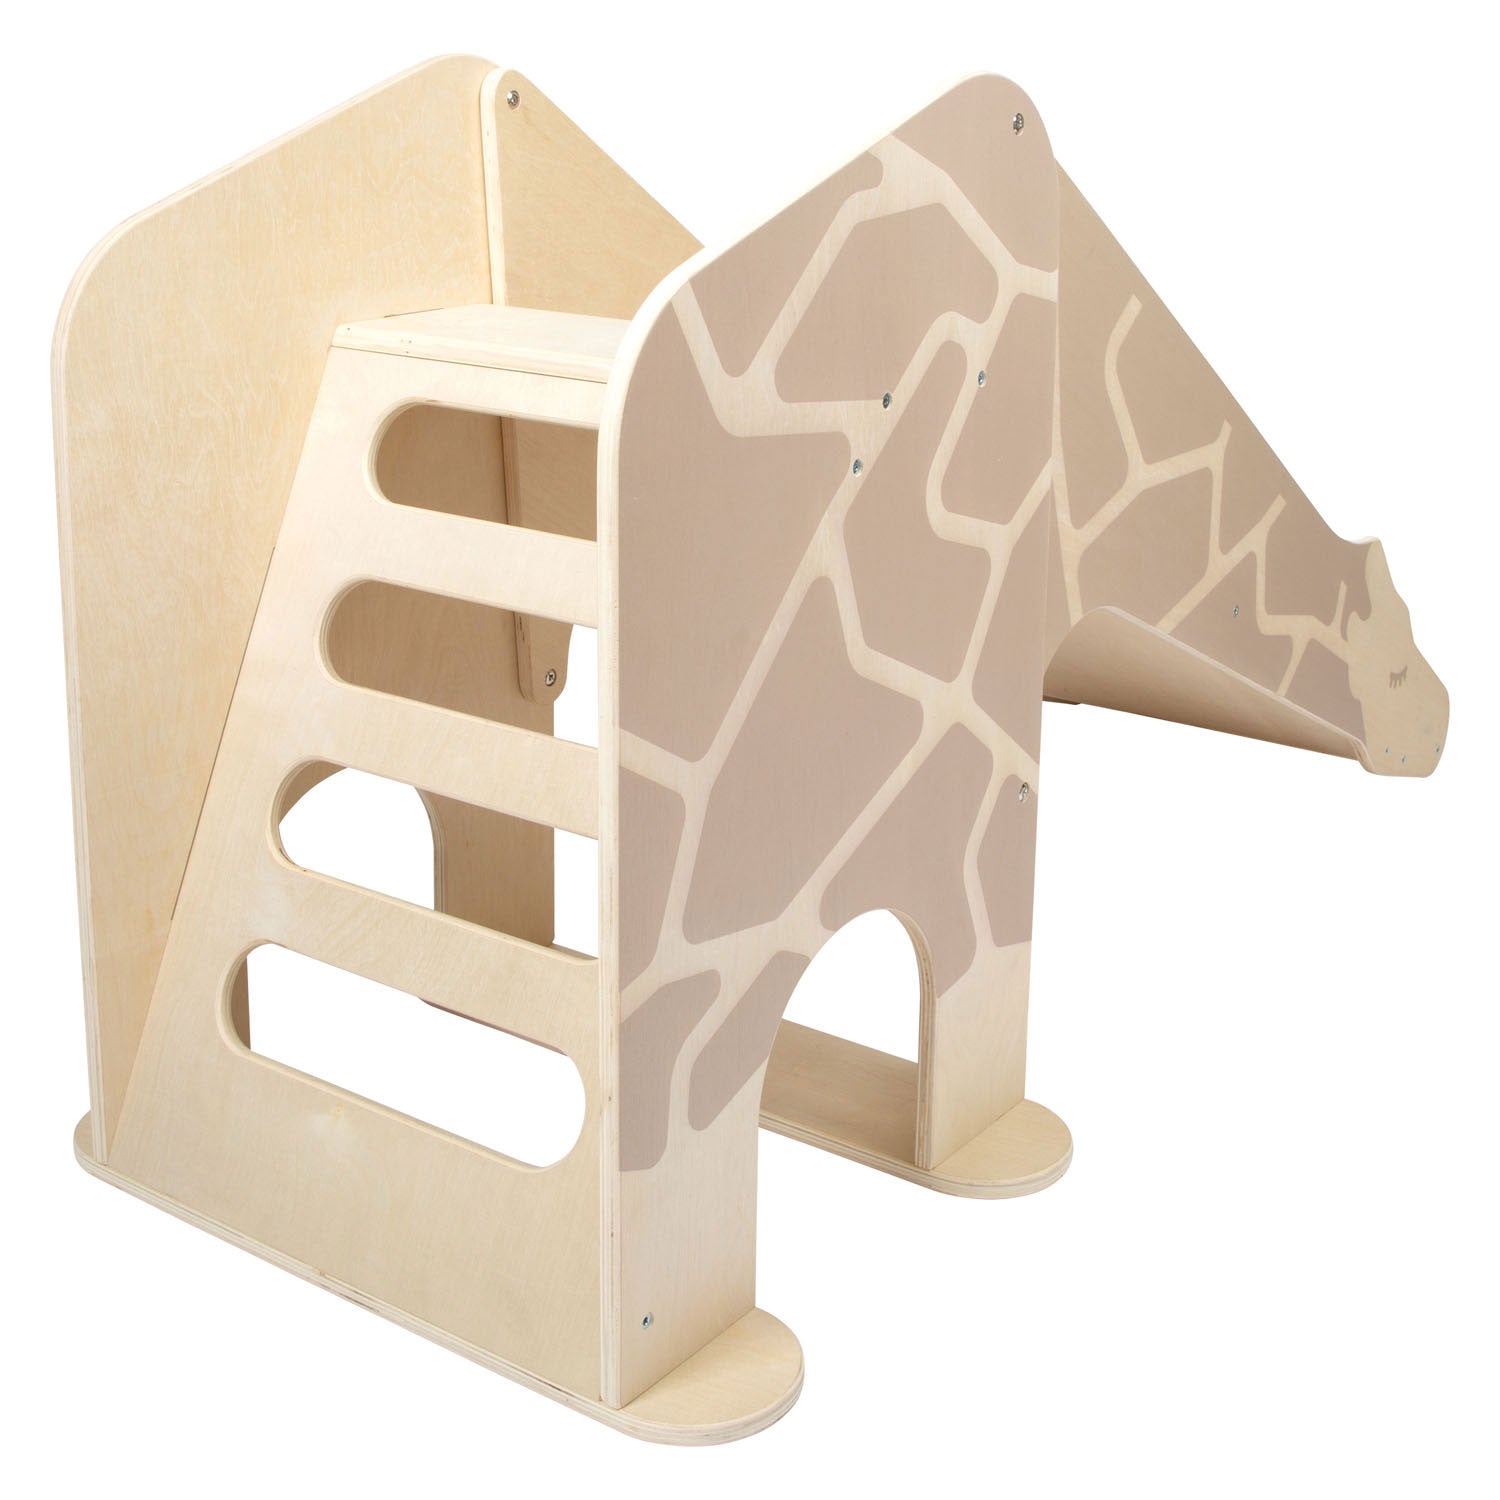 Kleiner Fuß: Giraffe's Kinderzimmer